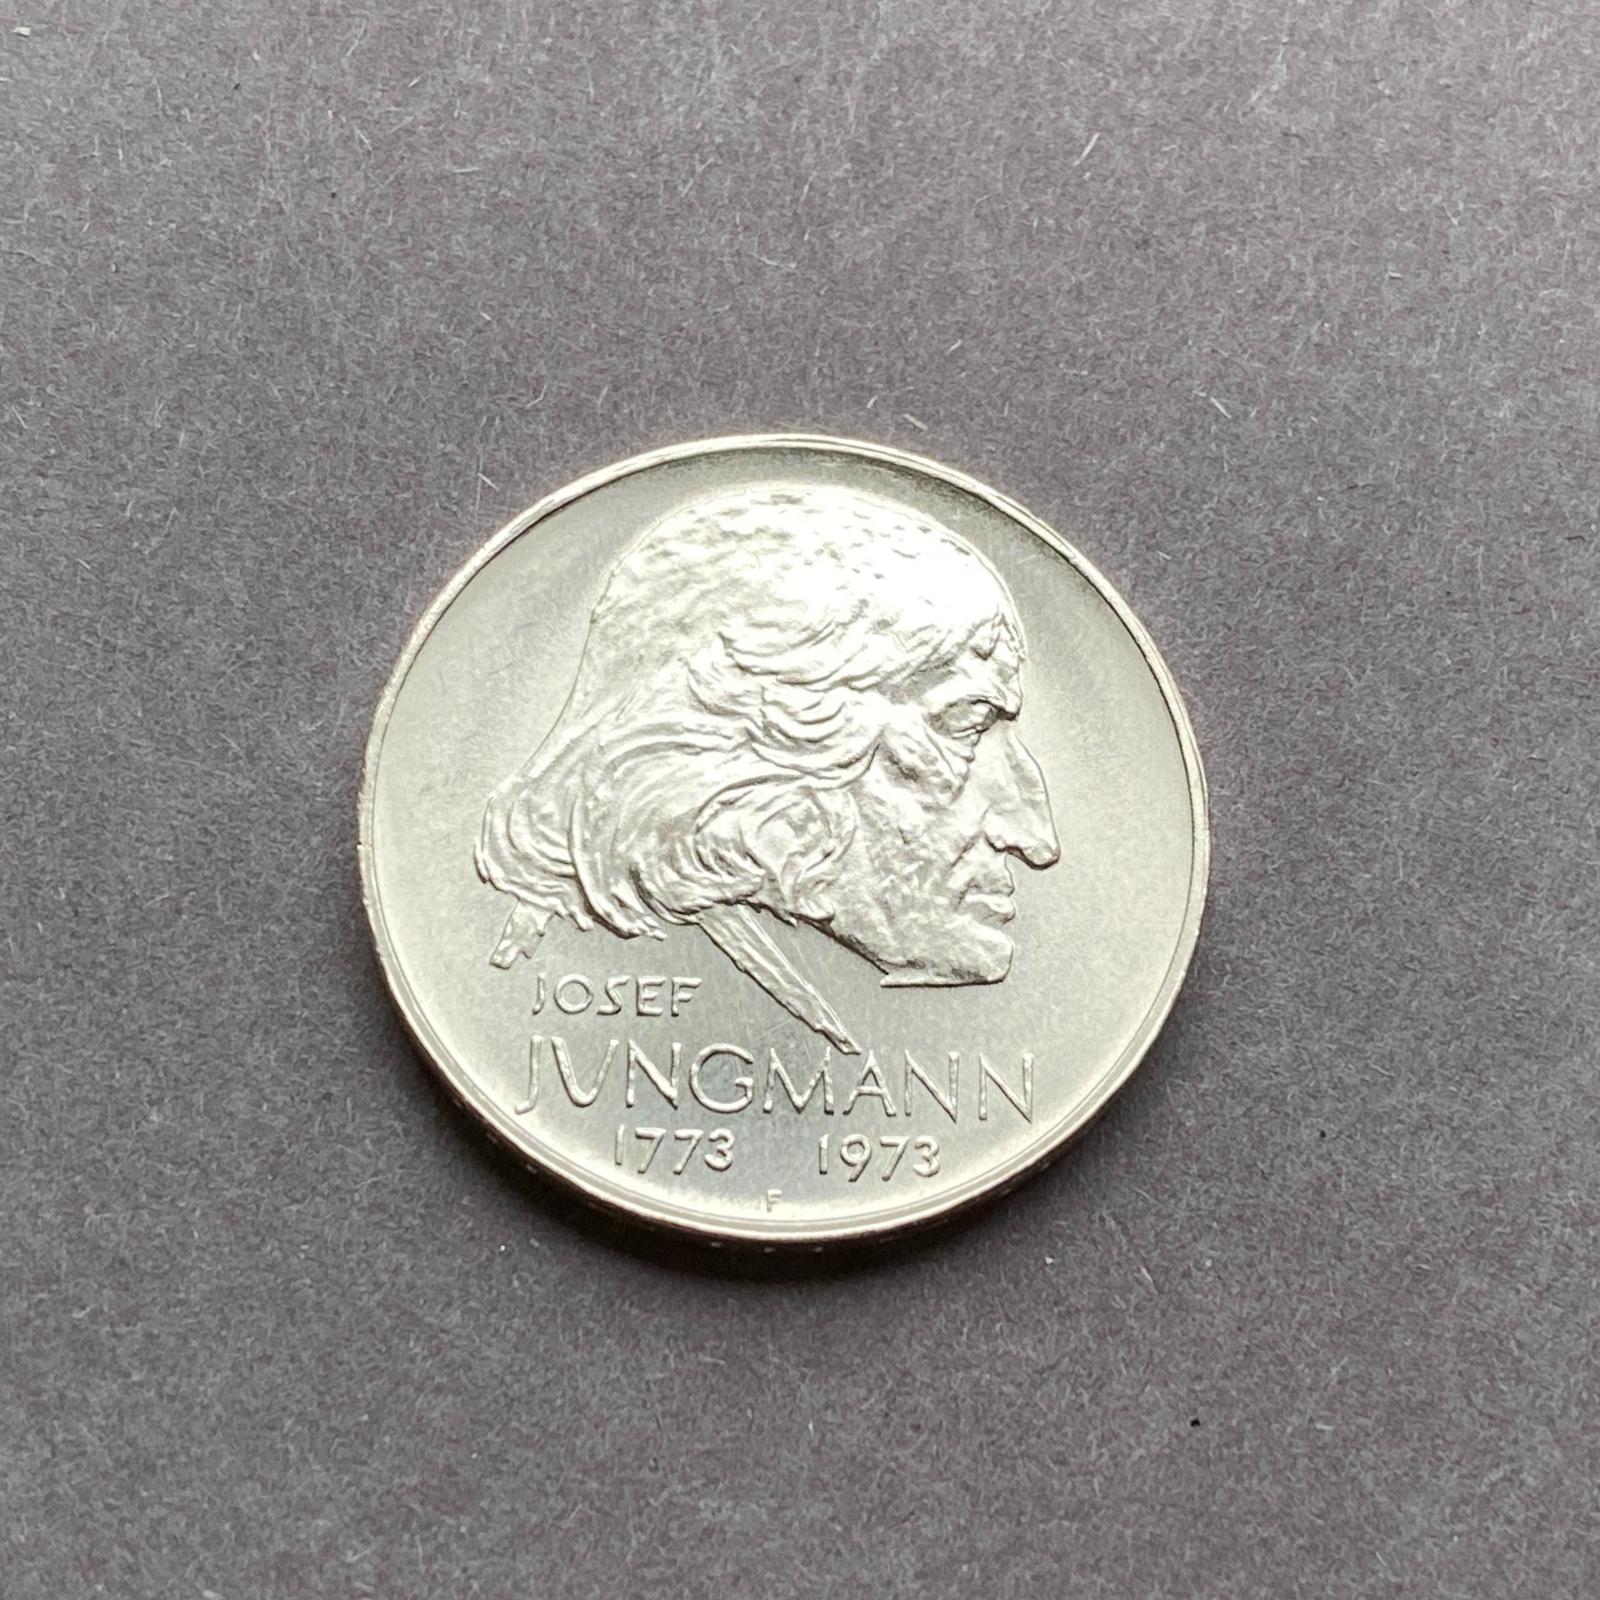 Strieborná minca, 50 Kčs J.Jungmann - S 240401/06 - Numizmatika